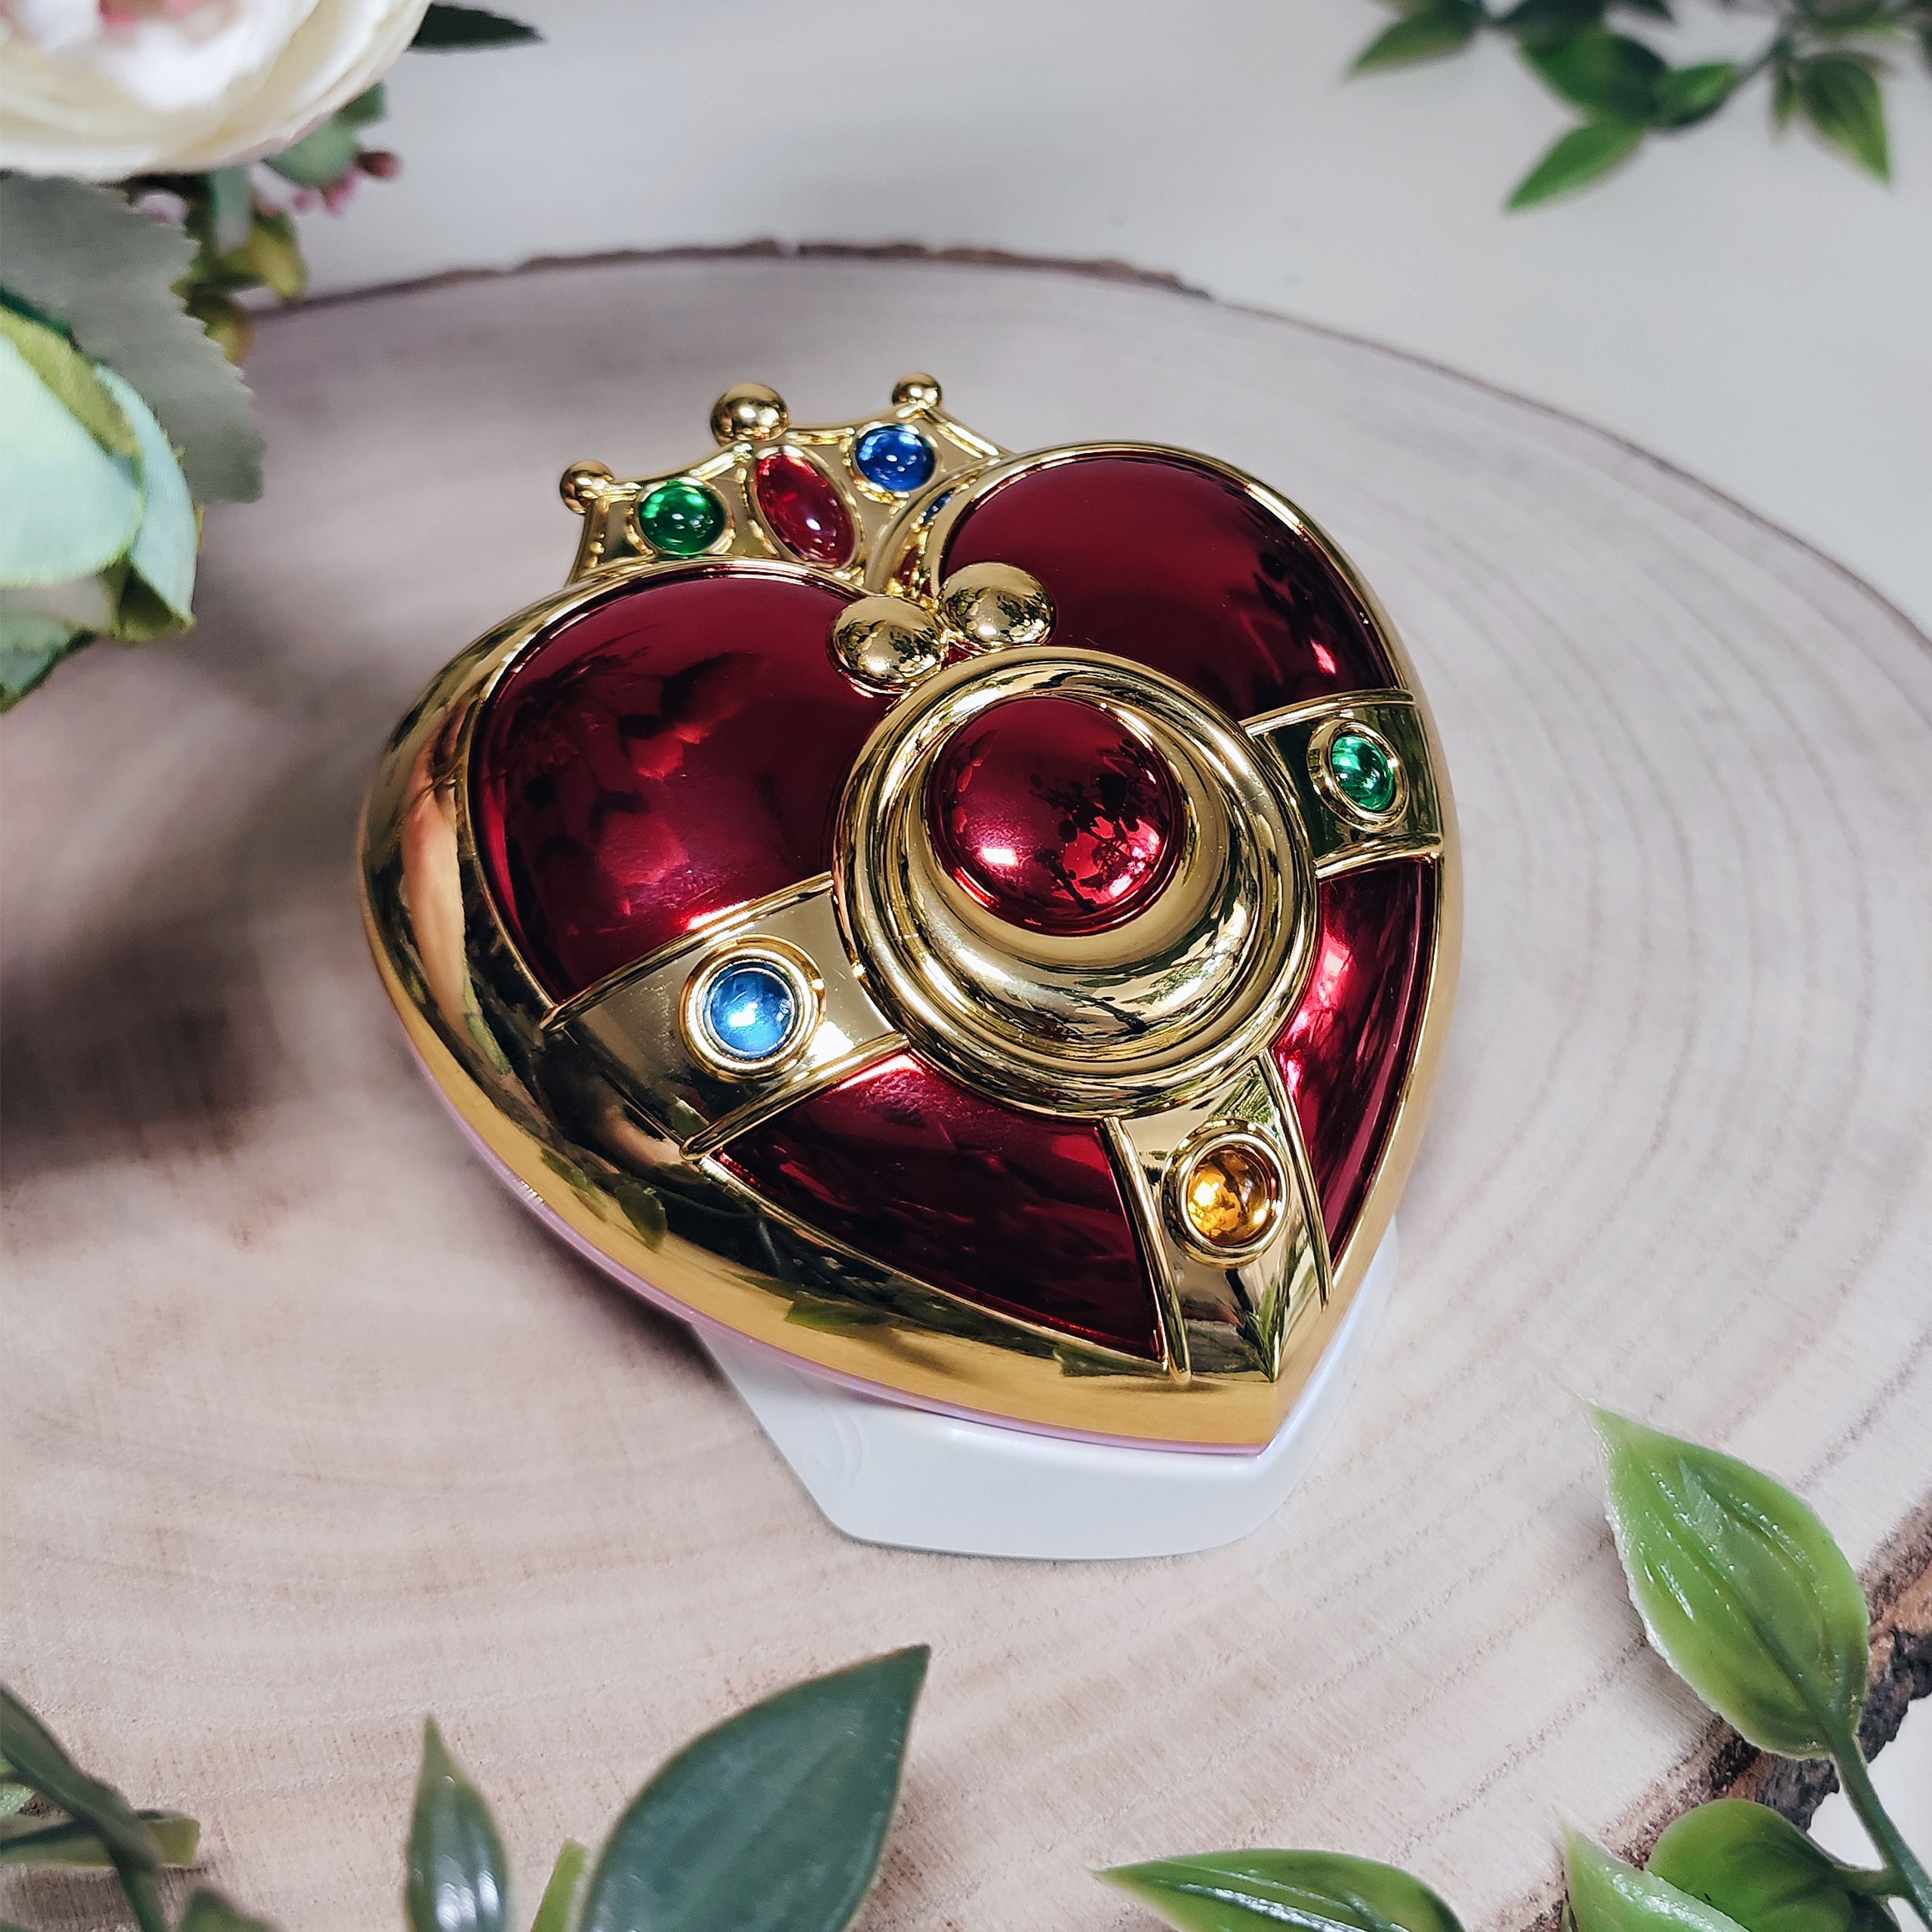 Sailor Moon - Cosmic Heart Compact Brosche Replik